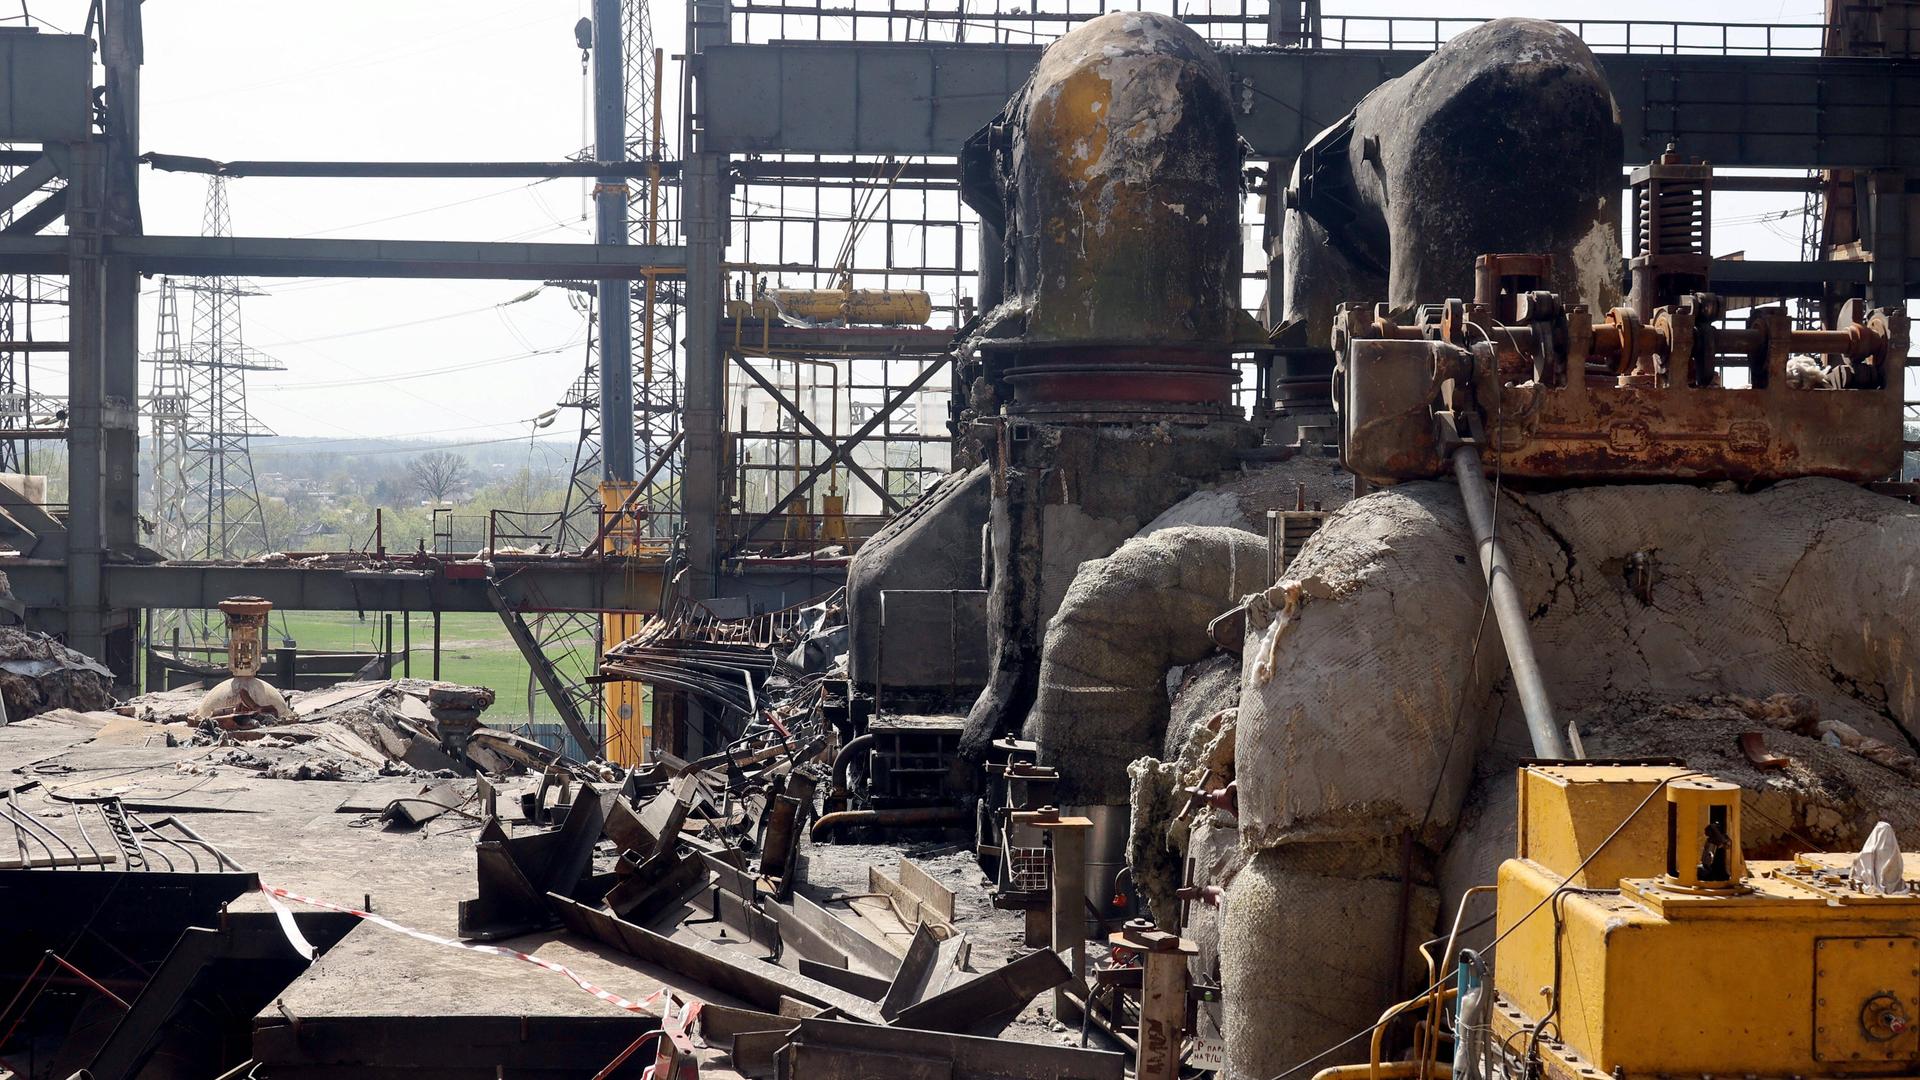 Verkohlte, beschädigte und mit Trümmern übersäte Rohre und Anlagen eines Kraftwerks in der Ukraine.